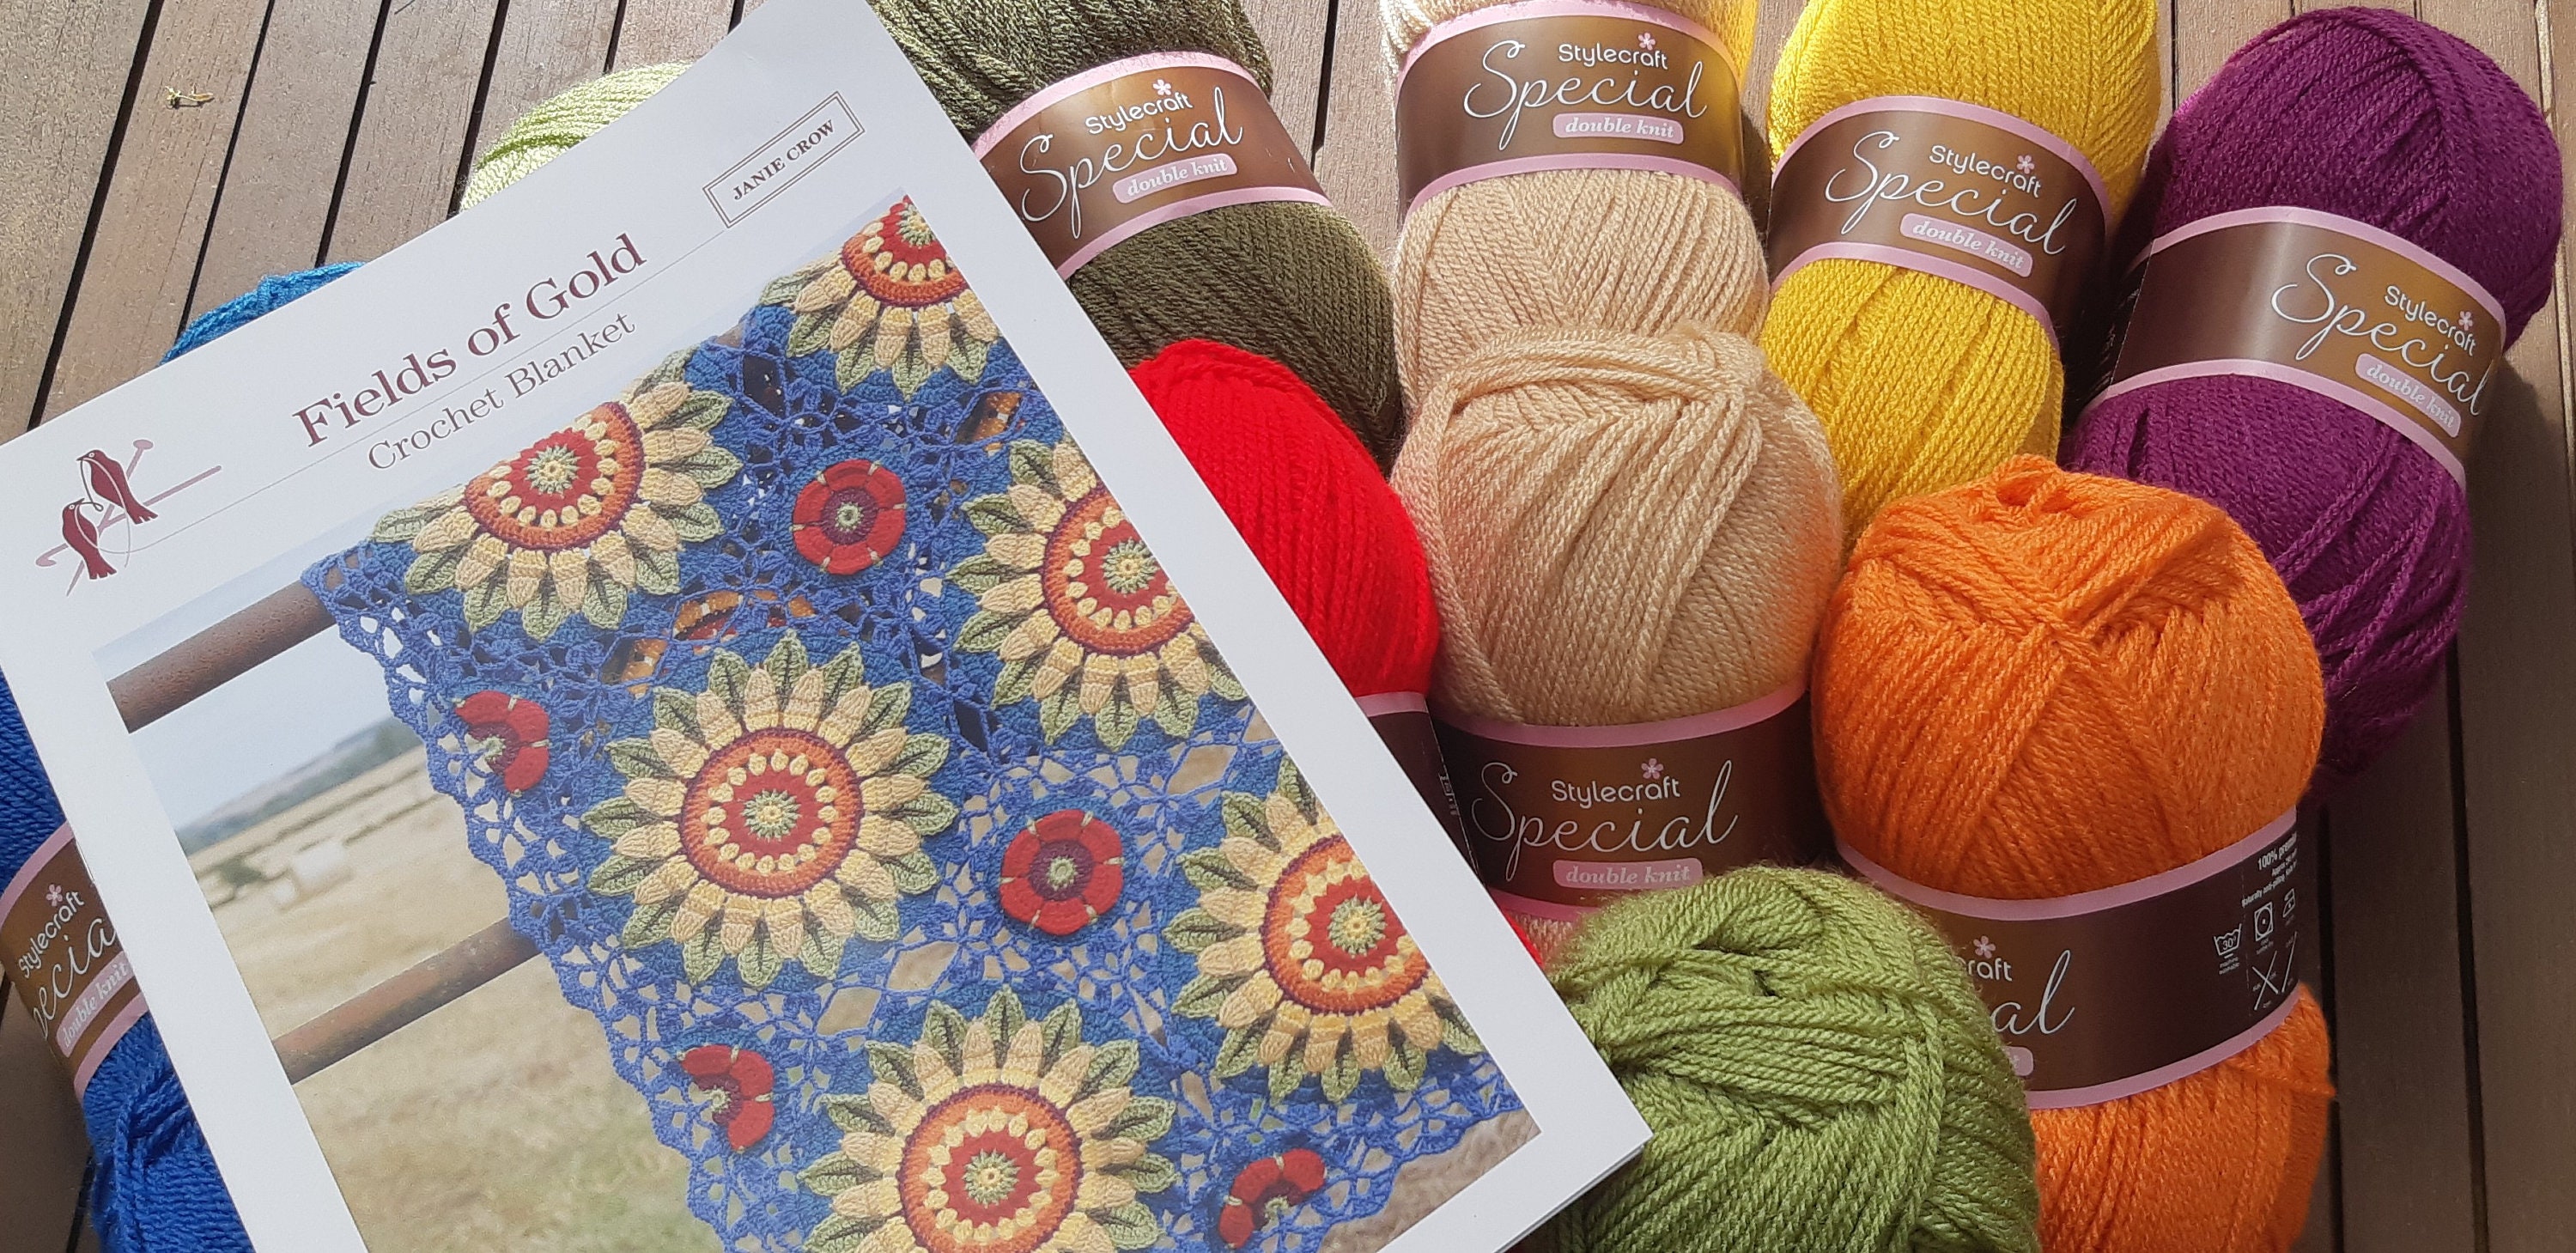 Crochet Blanket Kit Fields of Gold Pattern by Janie Crow. - Etsy UK